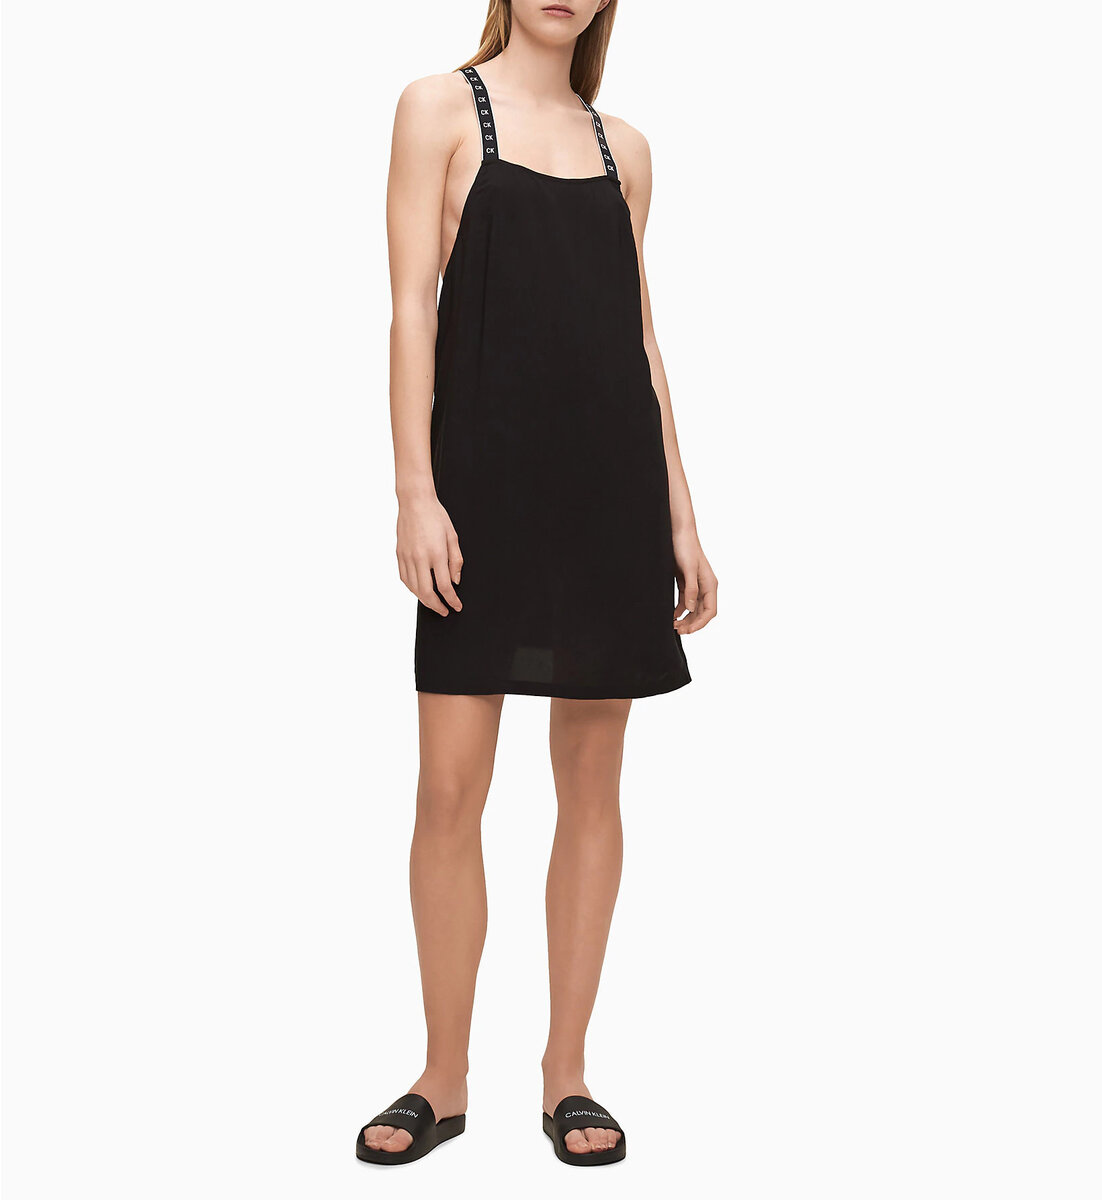 Dámské plážové šaty 2KDJ černá - Calvin Klein, černá L i10_P42392_1:3_2:90_